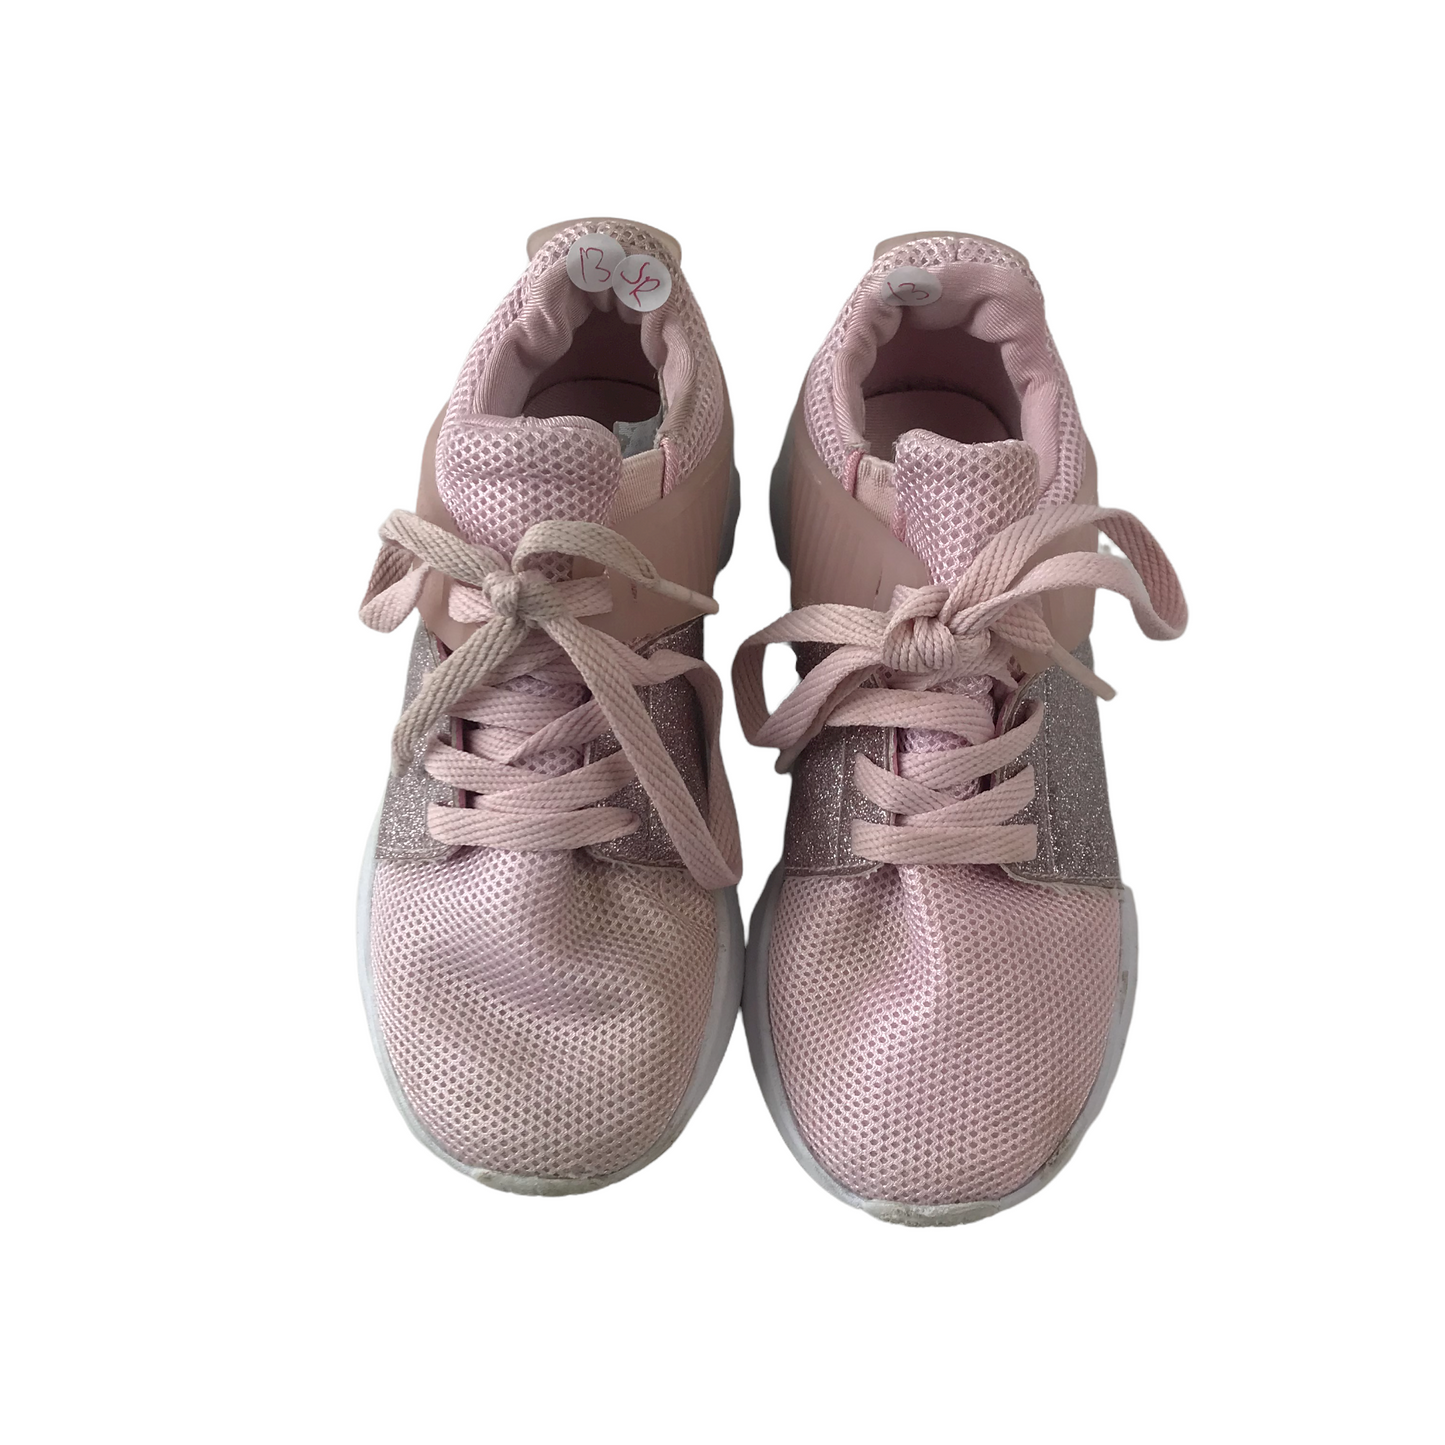 Light Pink Sparkle Detail Trainers Shoe Size 13 (jr)